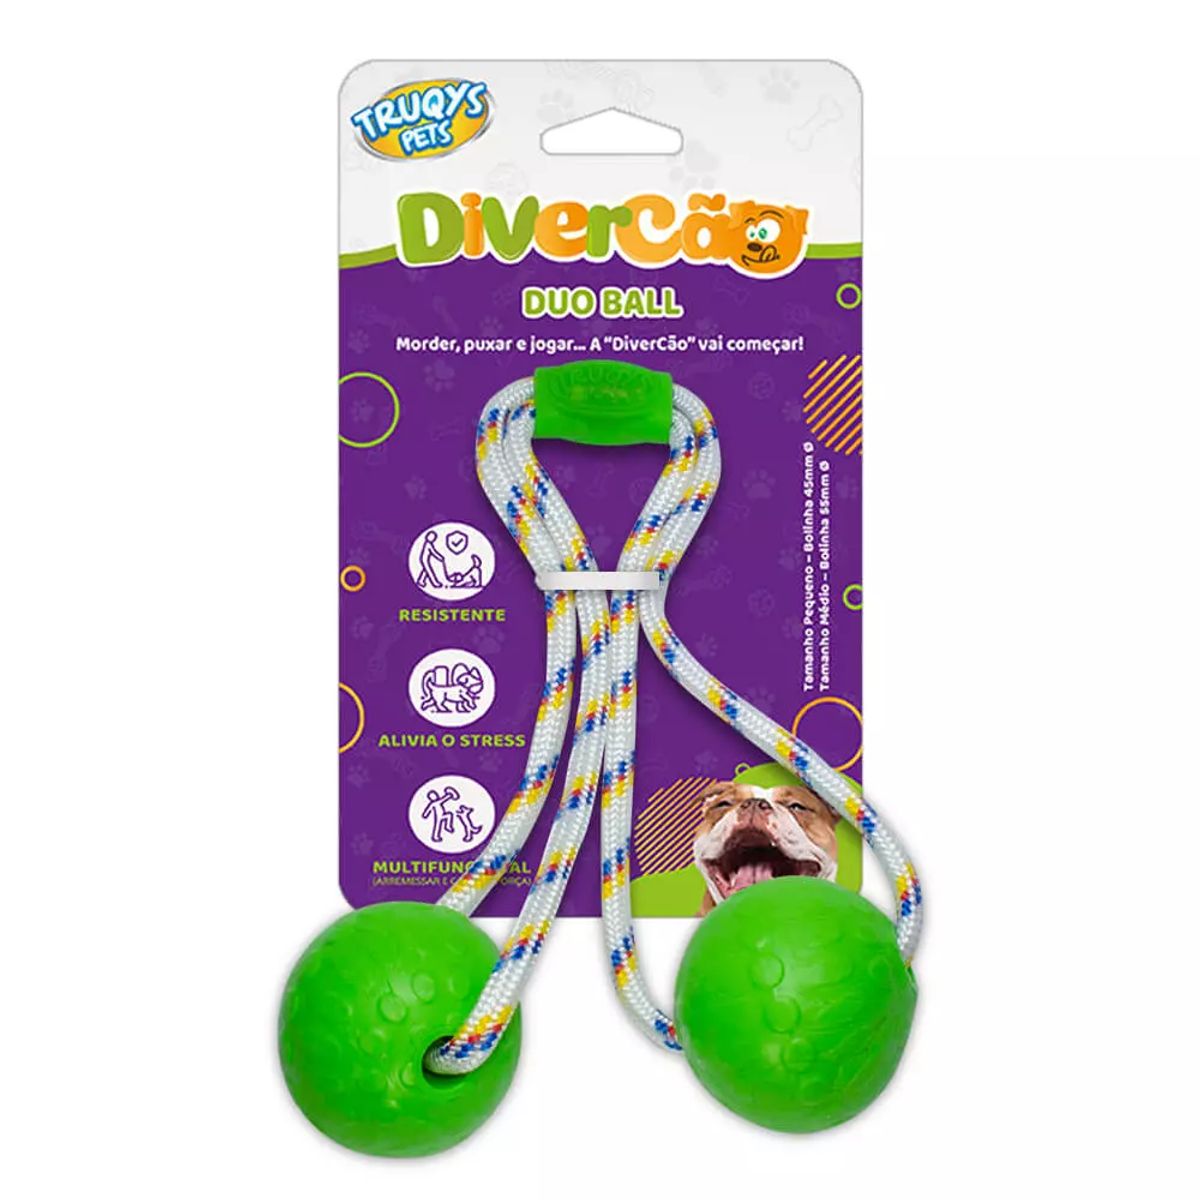 Brinquedo Divercão Truqys Pets Duo Ball Verde Unidade